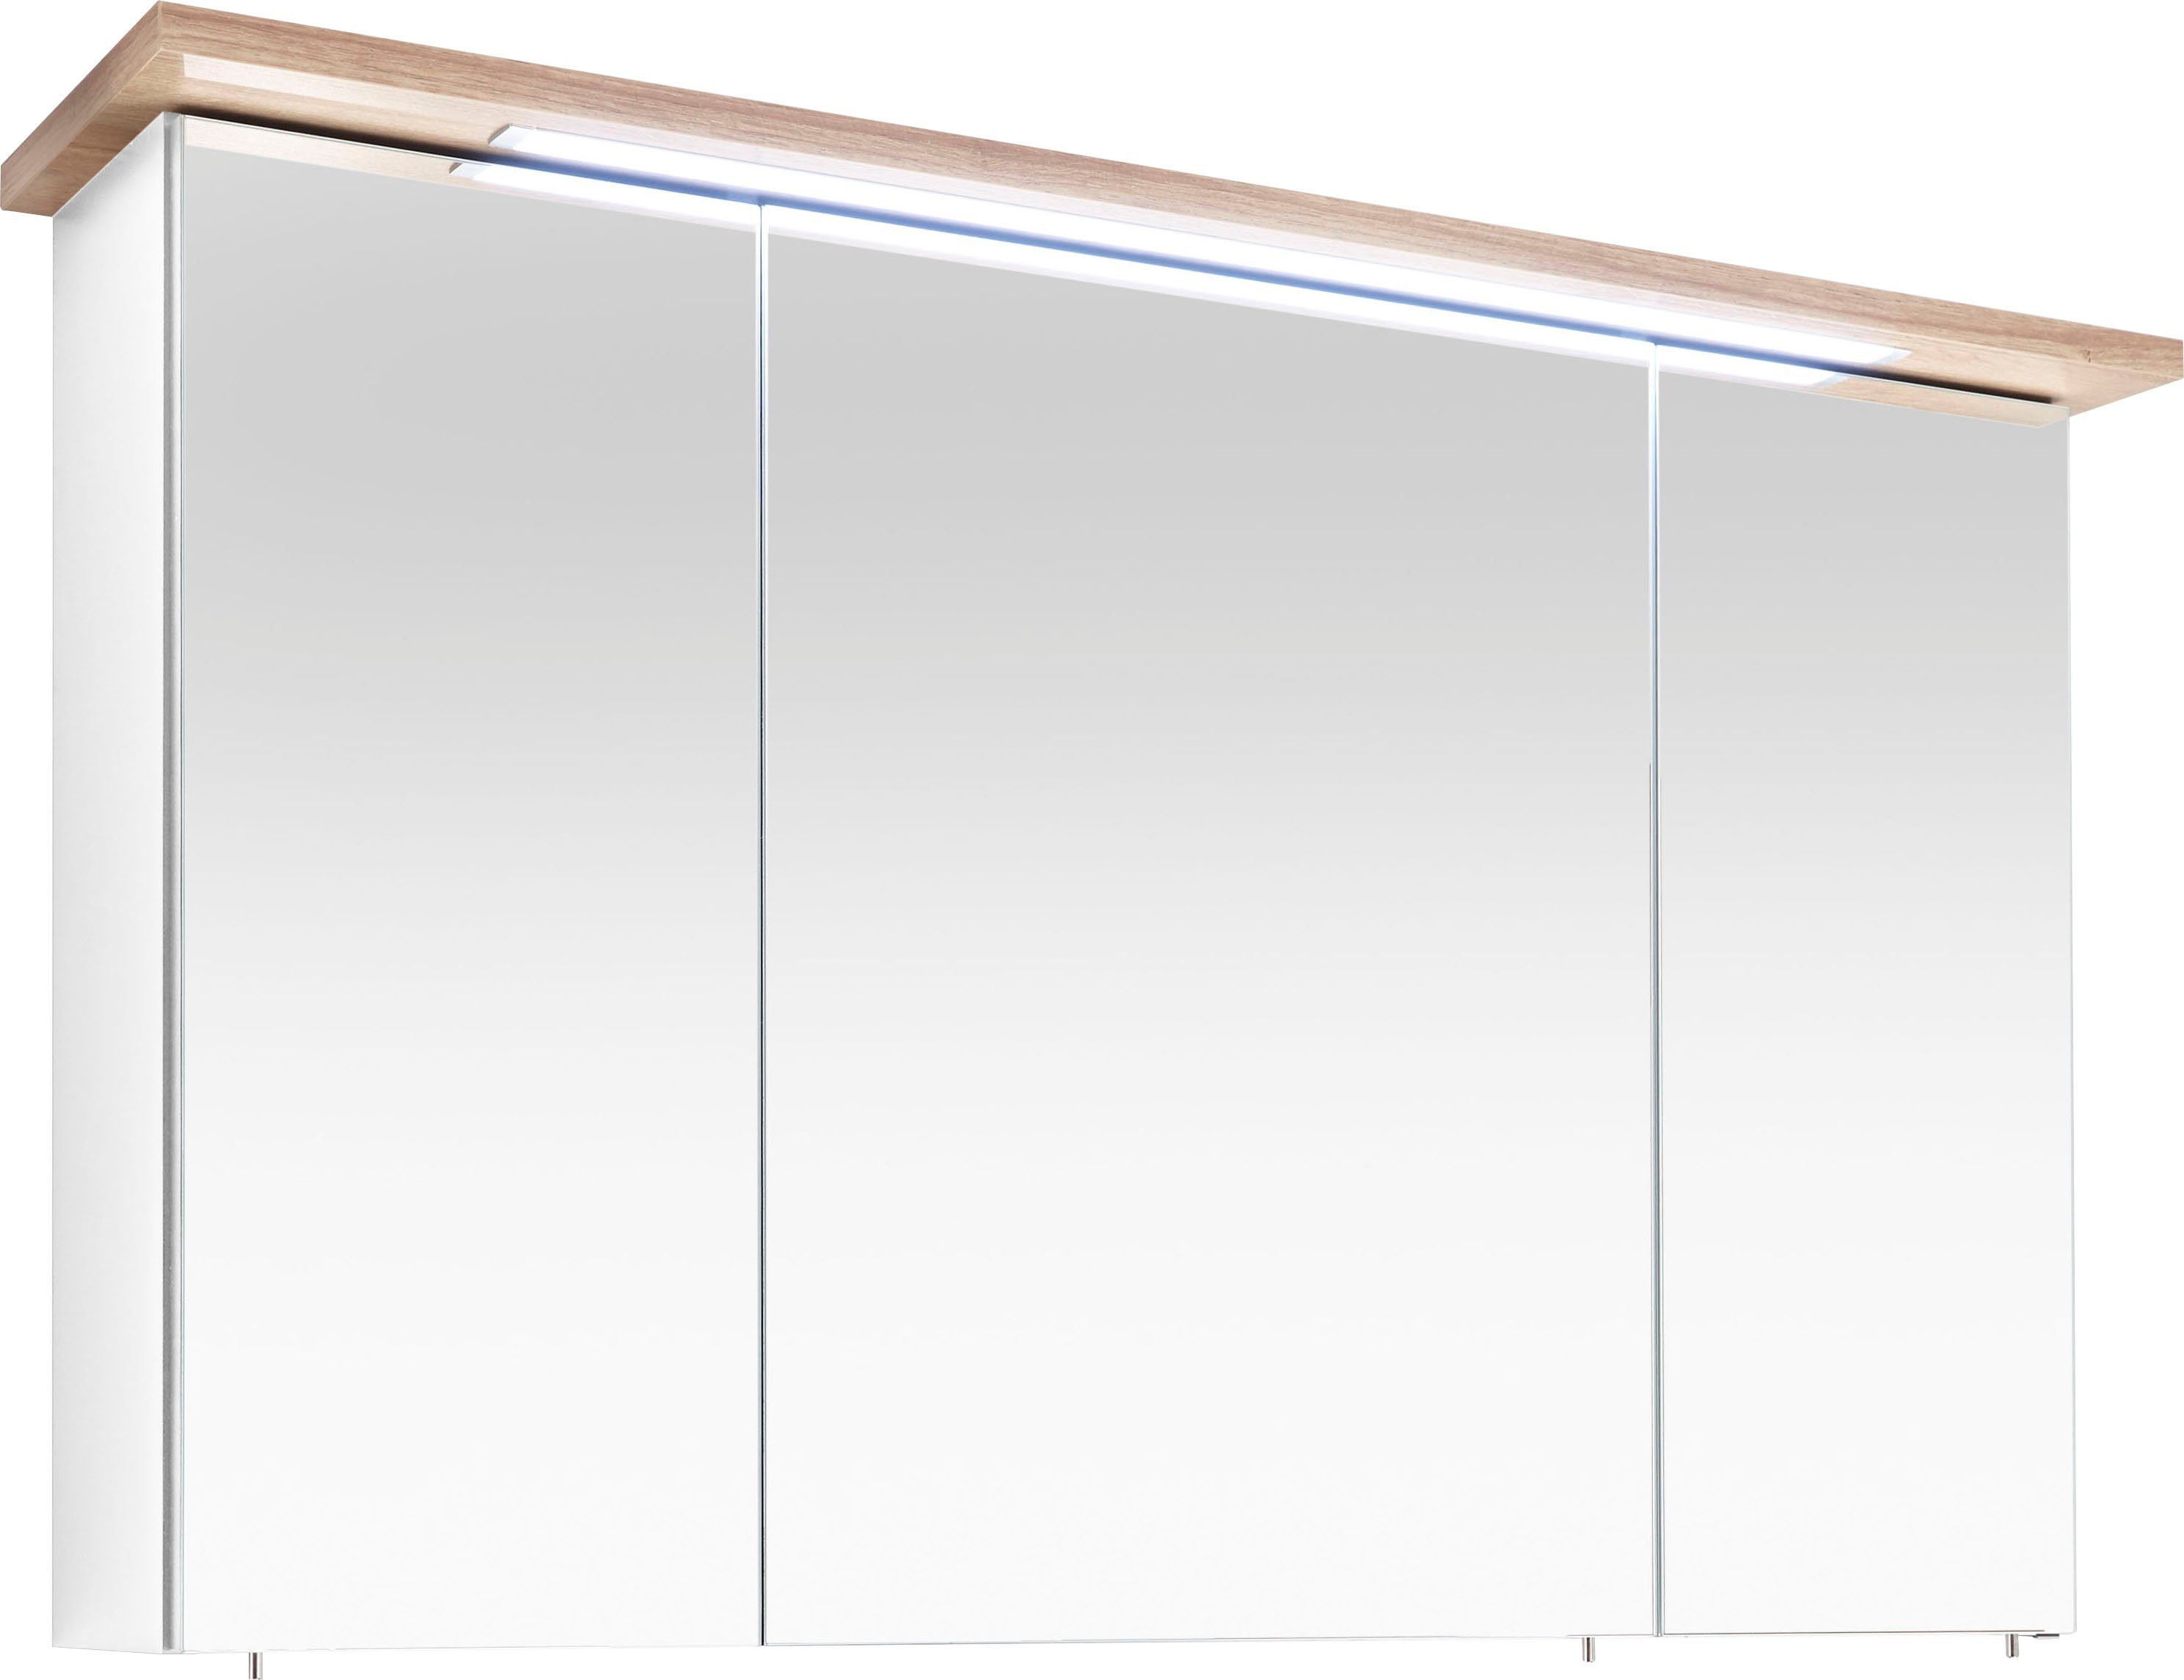 PELIPAL Spiegelschrank Quickset 923 Breite 115 cm, 3-türig, eingelassene LED -Beleuchtung, Steckdosenbox